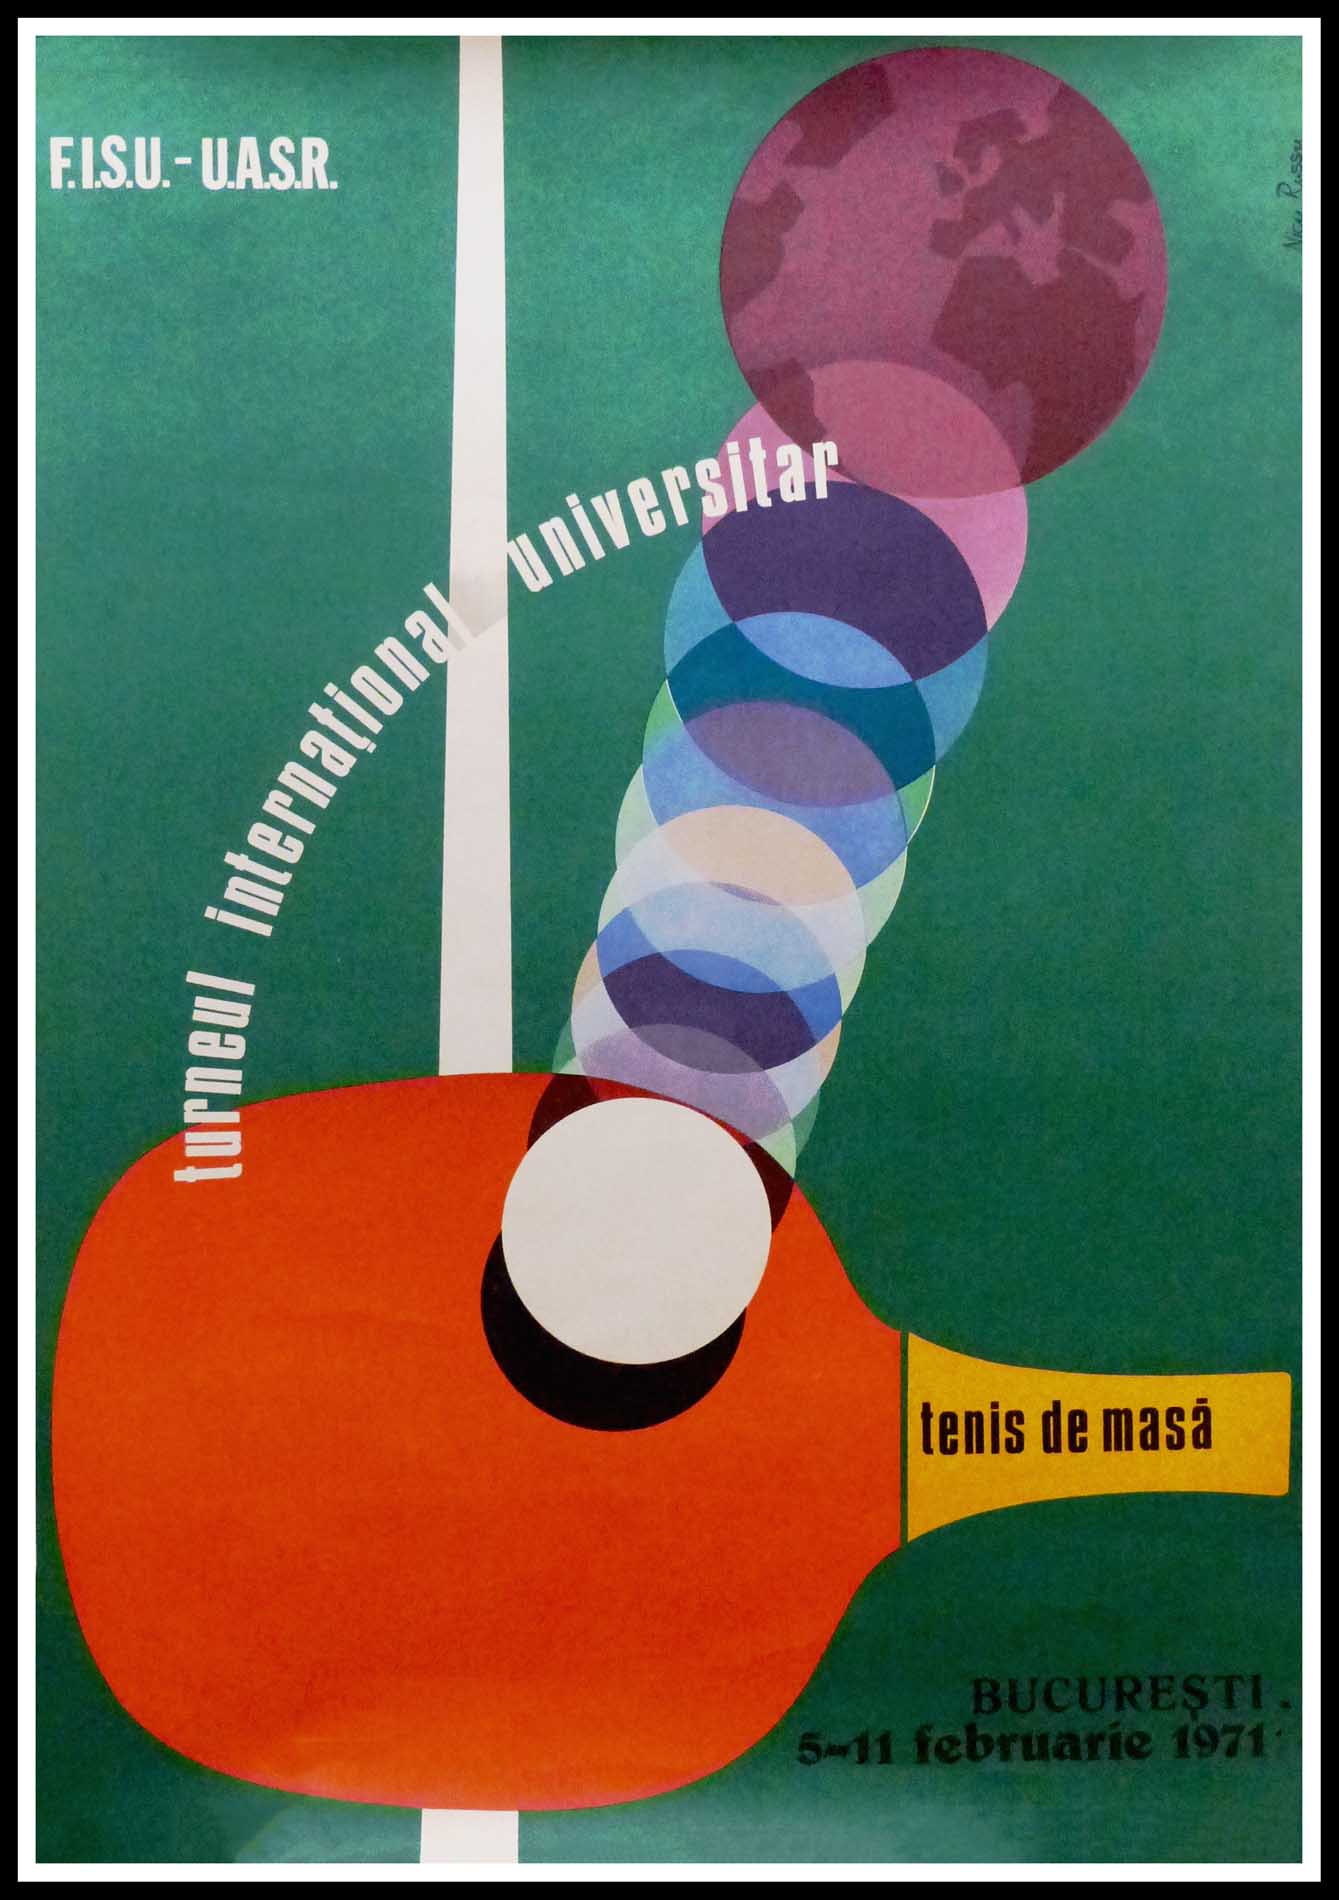 (alt="Affiche ancienne originale Tournoi international universitaire de tennis de table en Roumanie 1959 signée par N. Russu, imprimeur : inconnu")